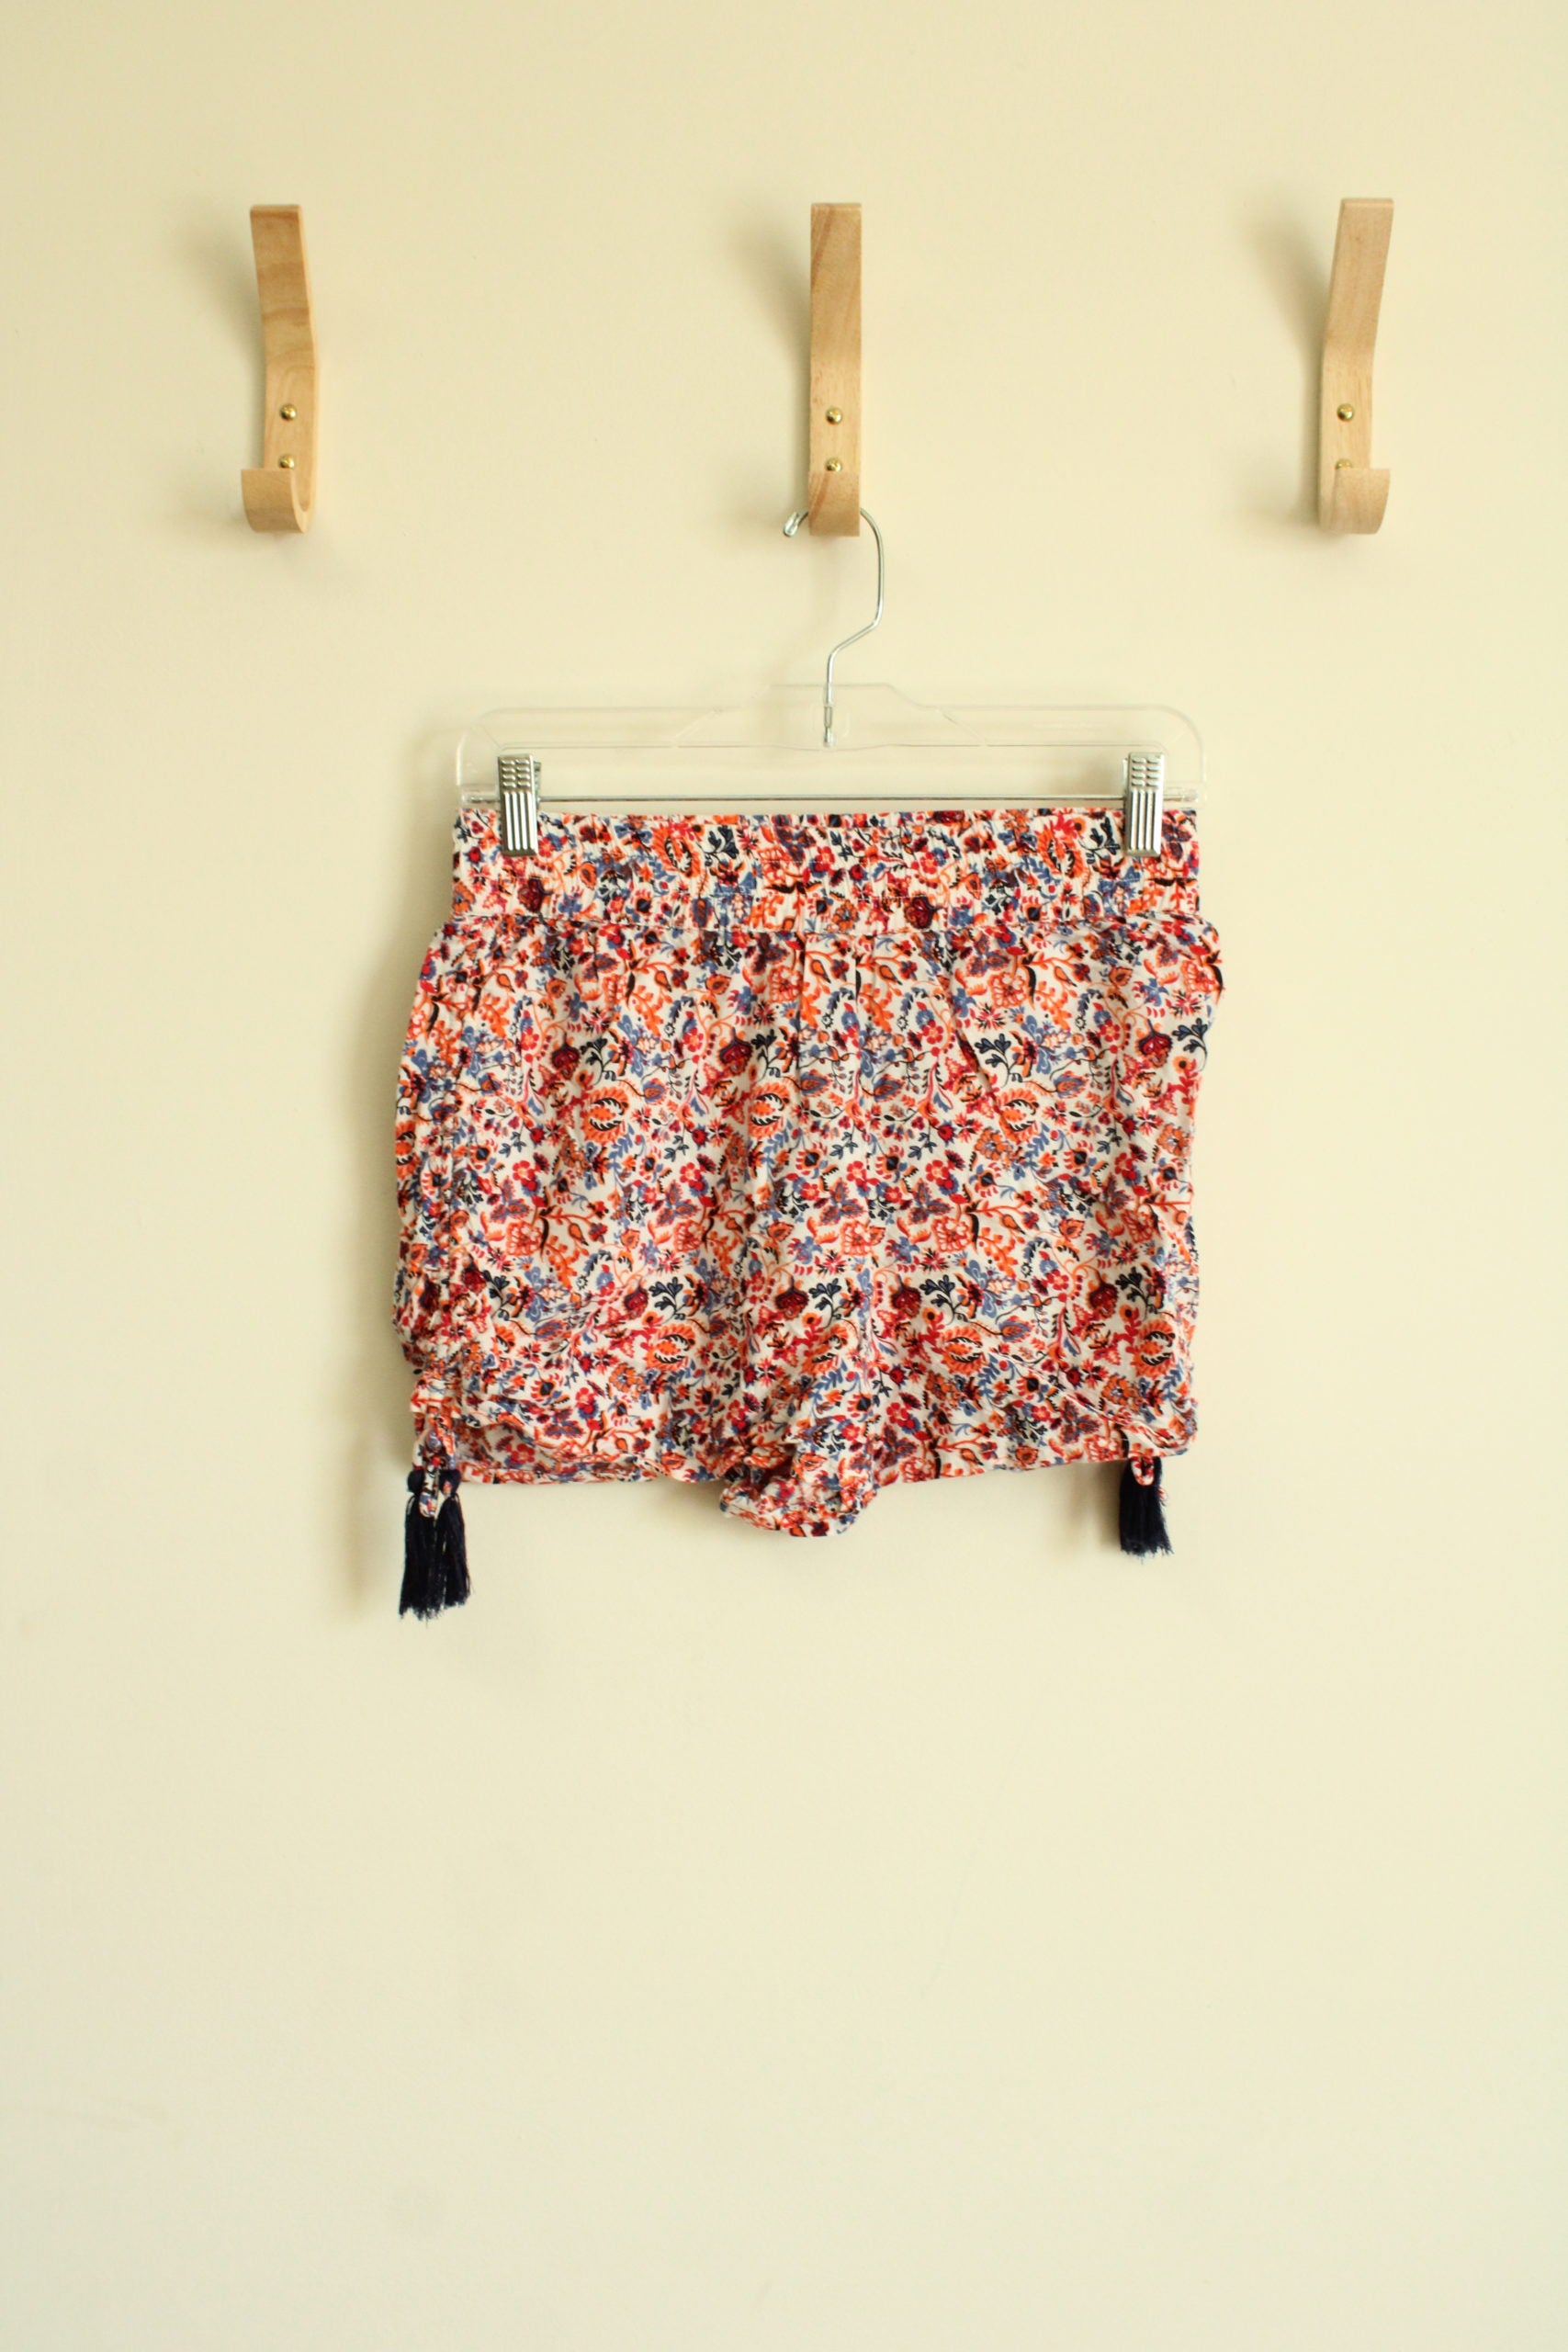 Star Twenty Floral Cinch Shorts | Size M